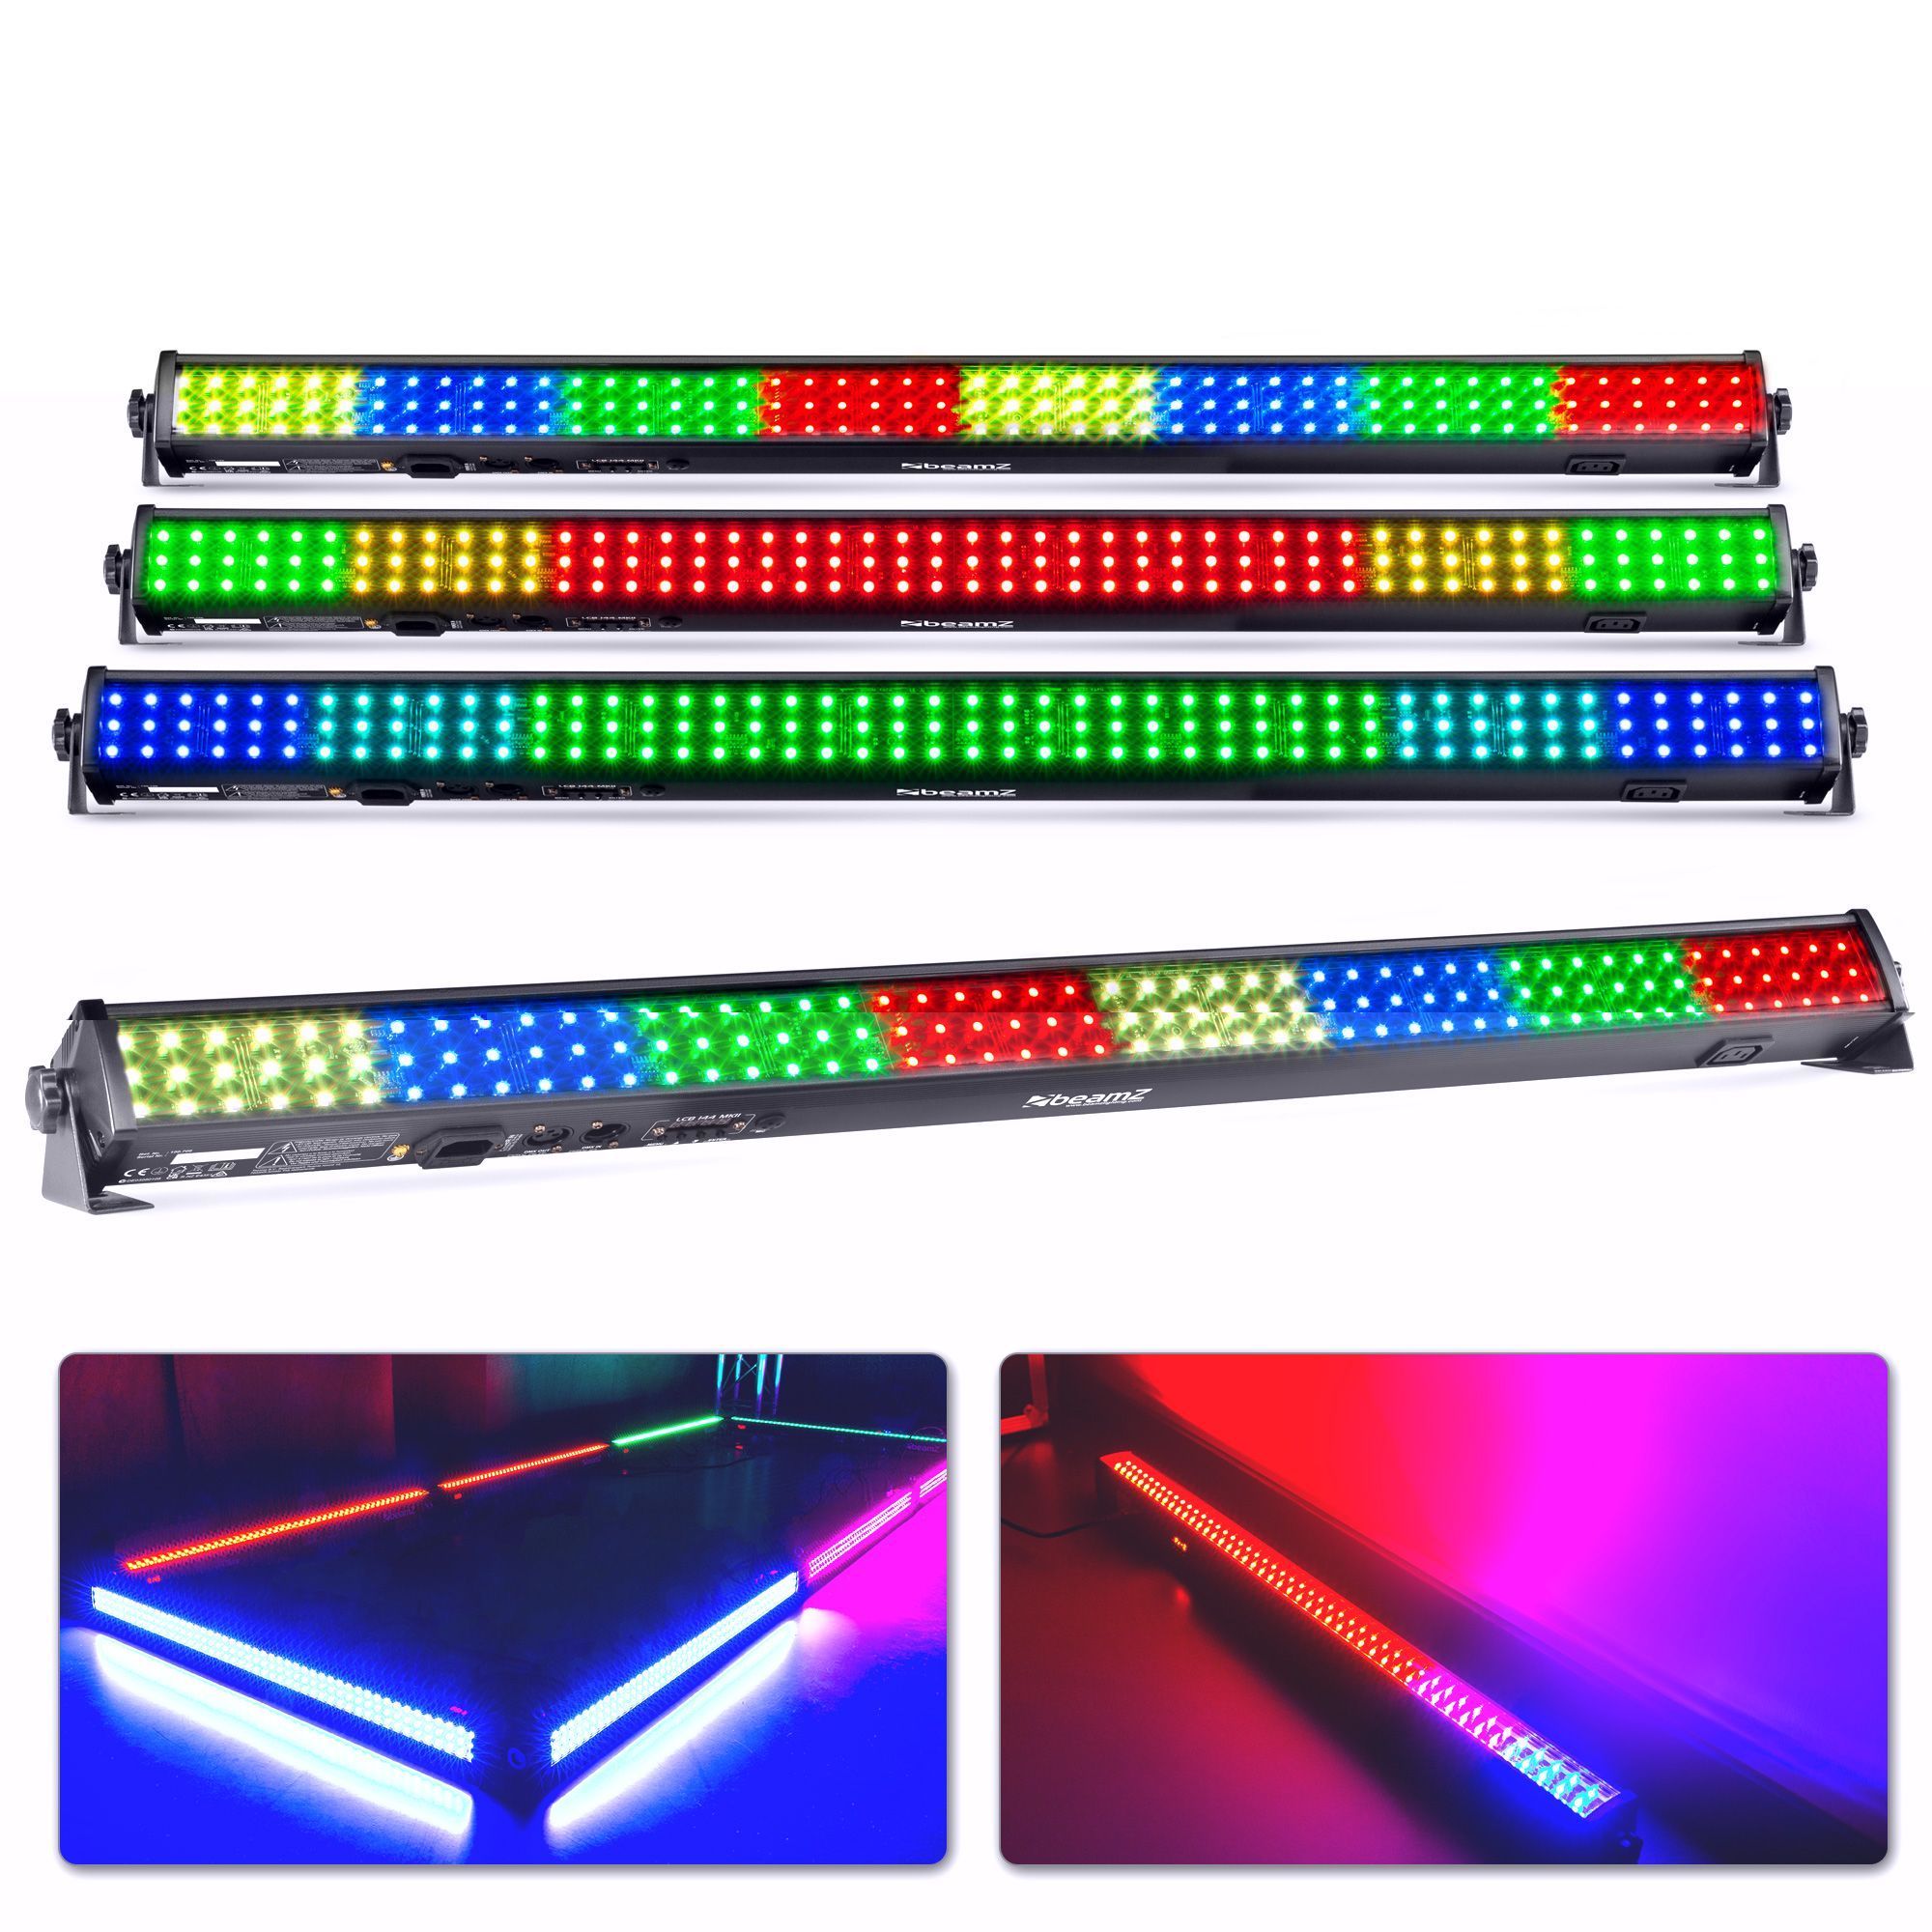 BeamZ LCB144 MKII - Set van 4 RGB LED bars voor wanden, plafonds, etc.